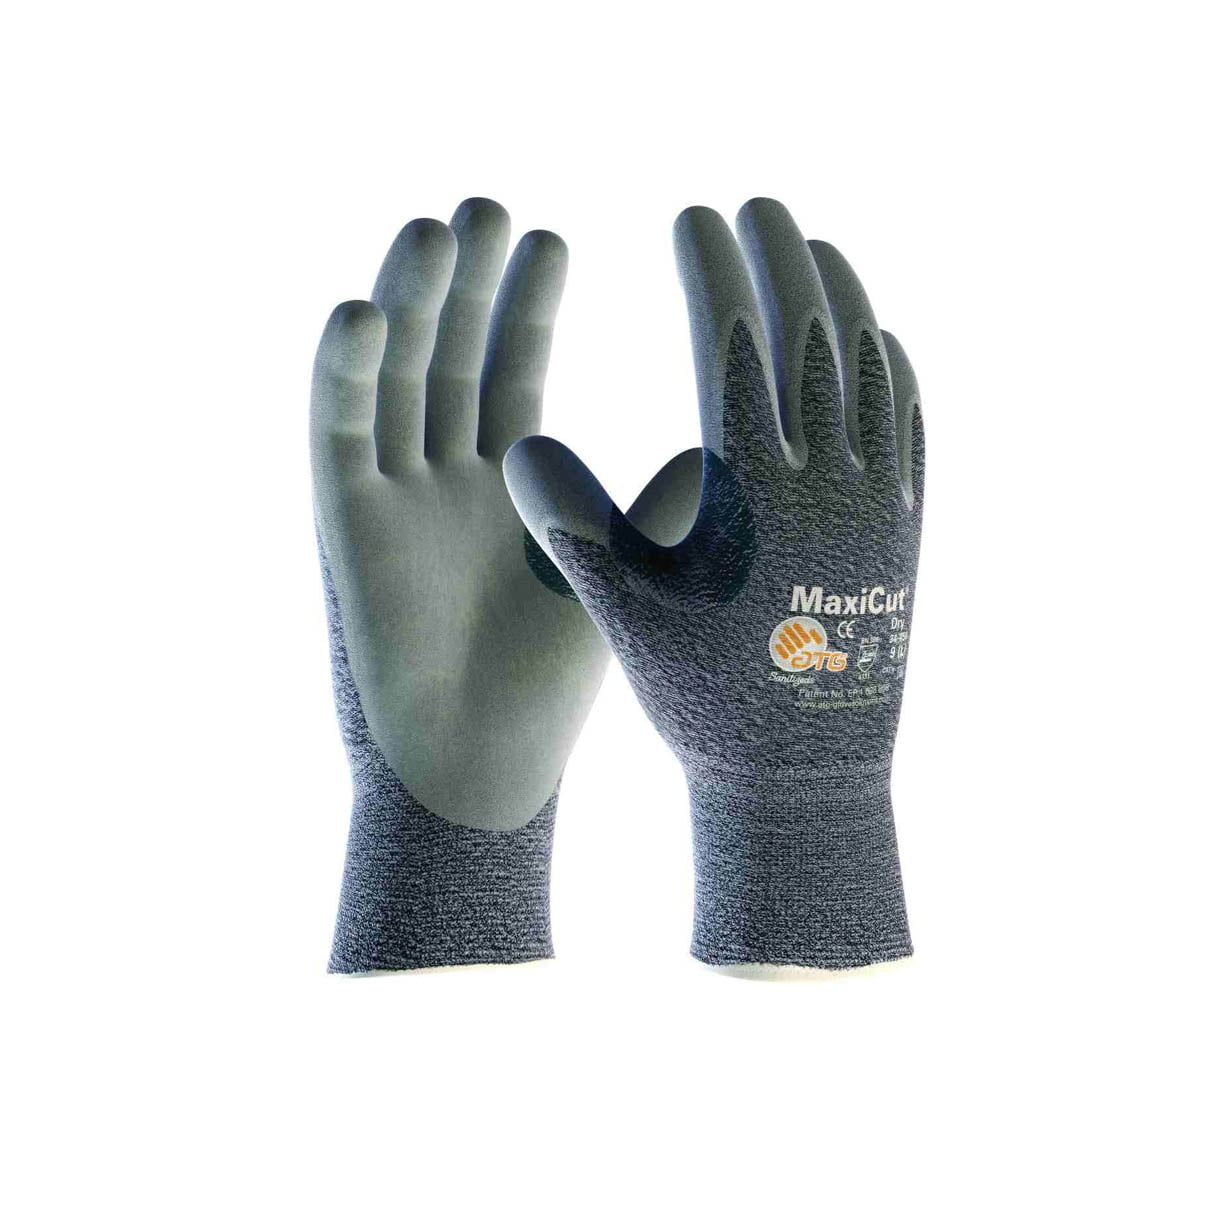 ATG radne rukavice MaxiCut® Dry 34-450 - masineialati.ba - Profesionalni i  hobi alati i mašine